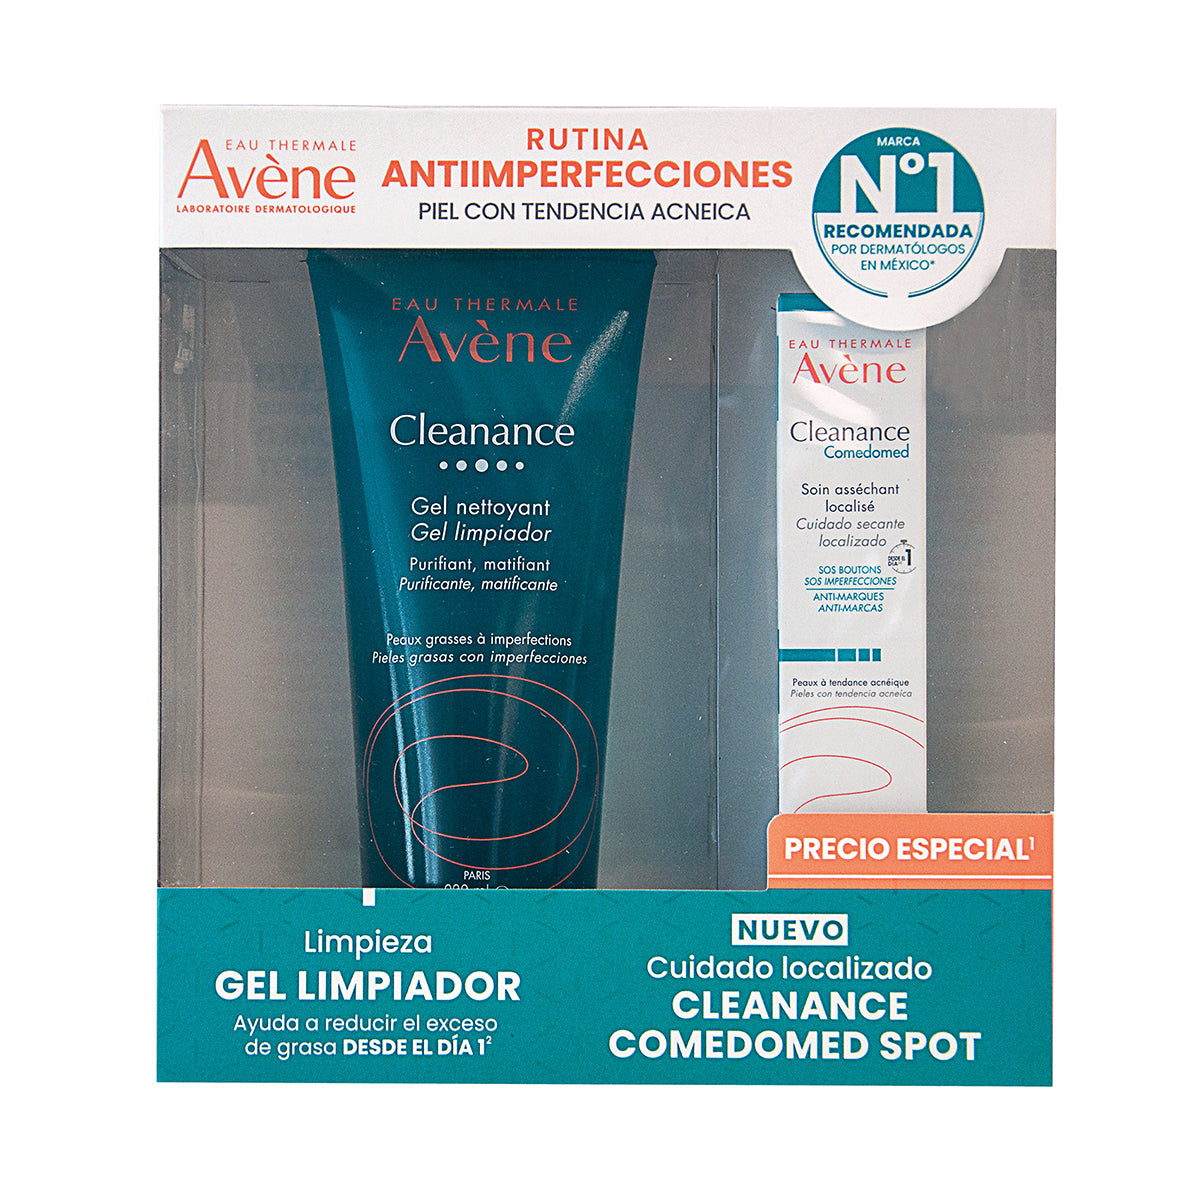 Avene Kit-cleanance gel 200ml + Cleanance comedomed spot sos 15ml.